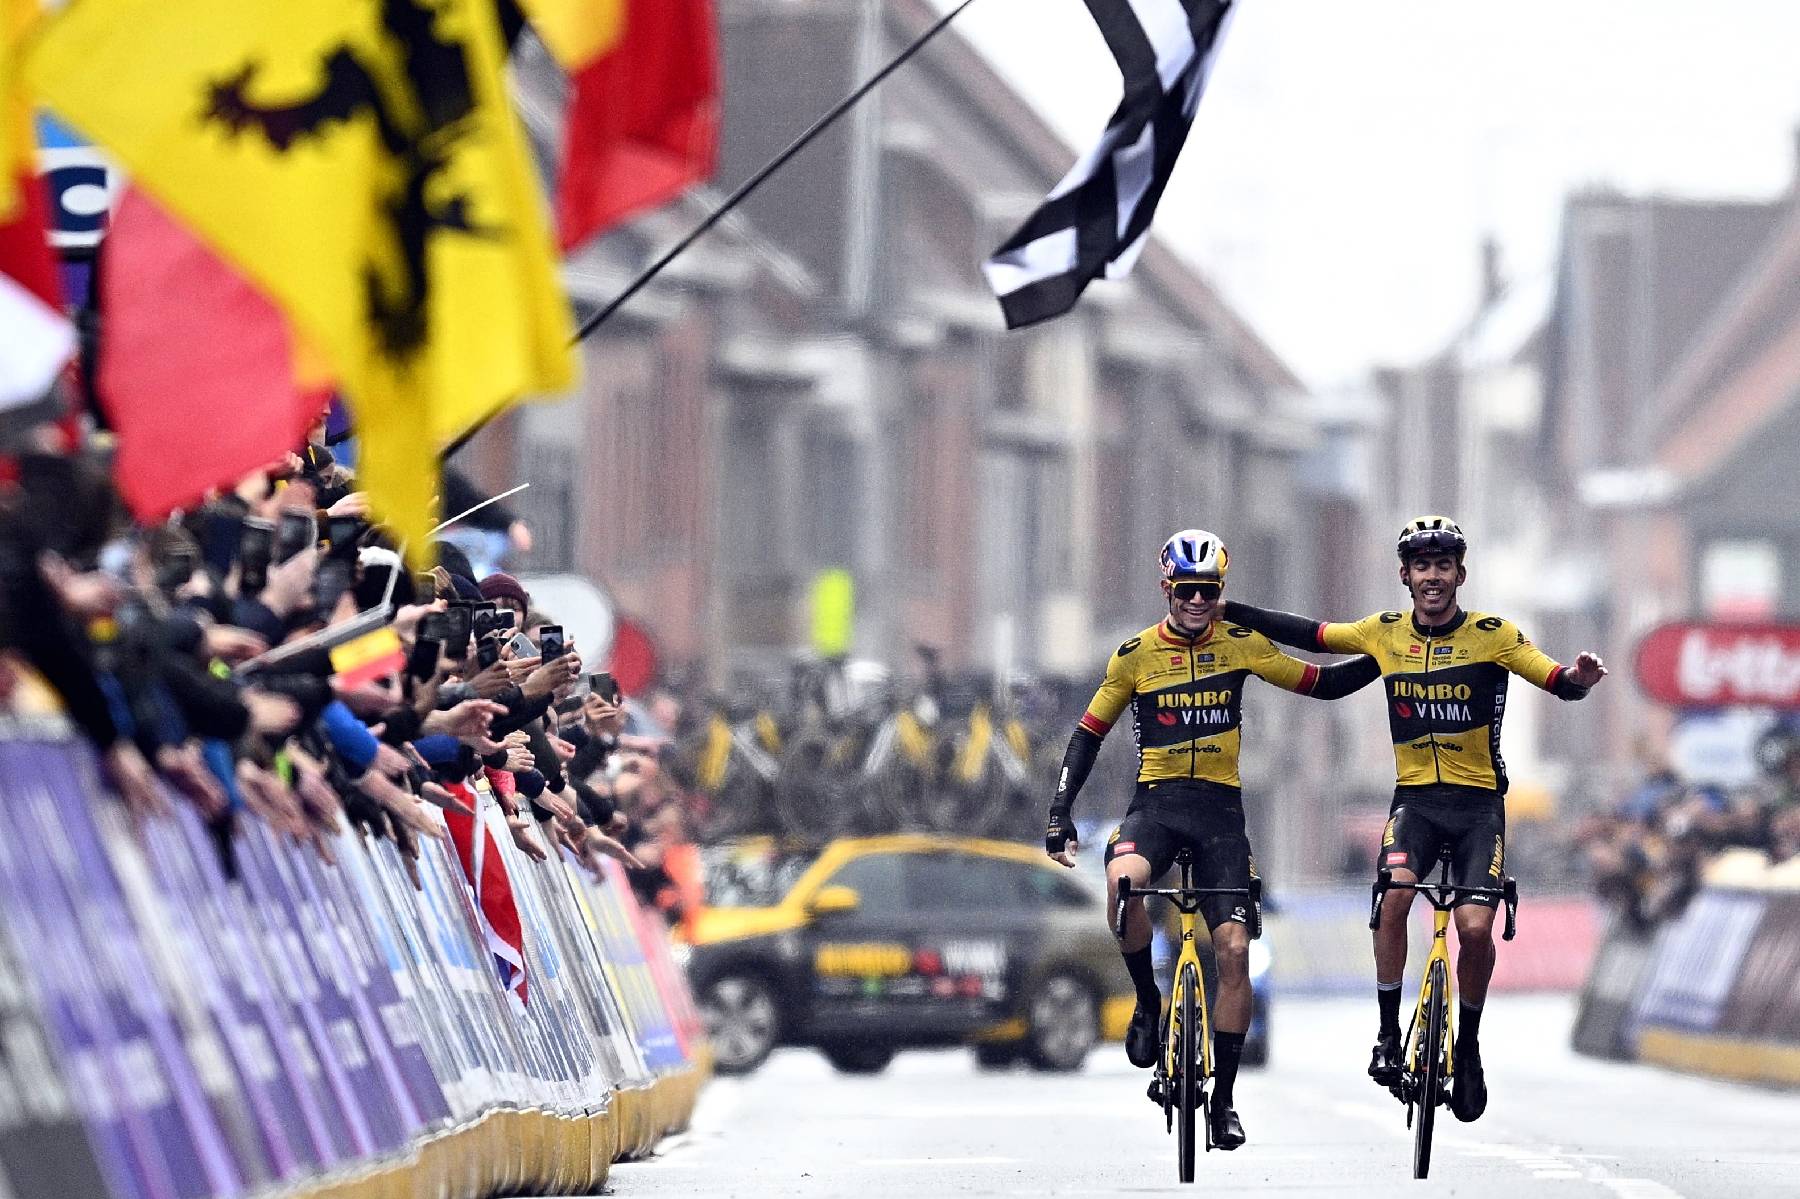 Cyclisme: Wout van Aert offre Gand-Wevelgem à son équipier Christophe Laporte